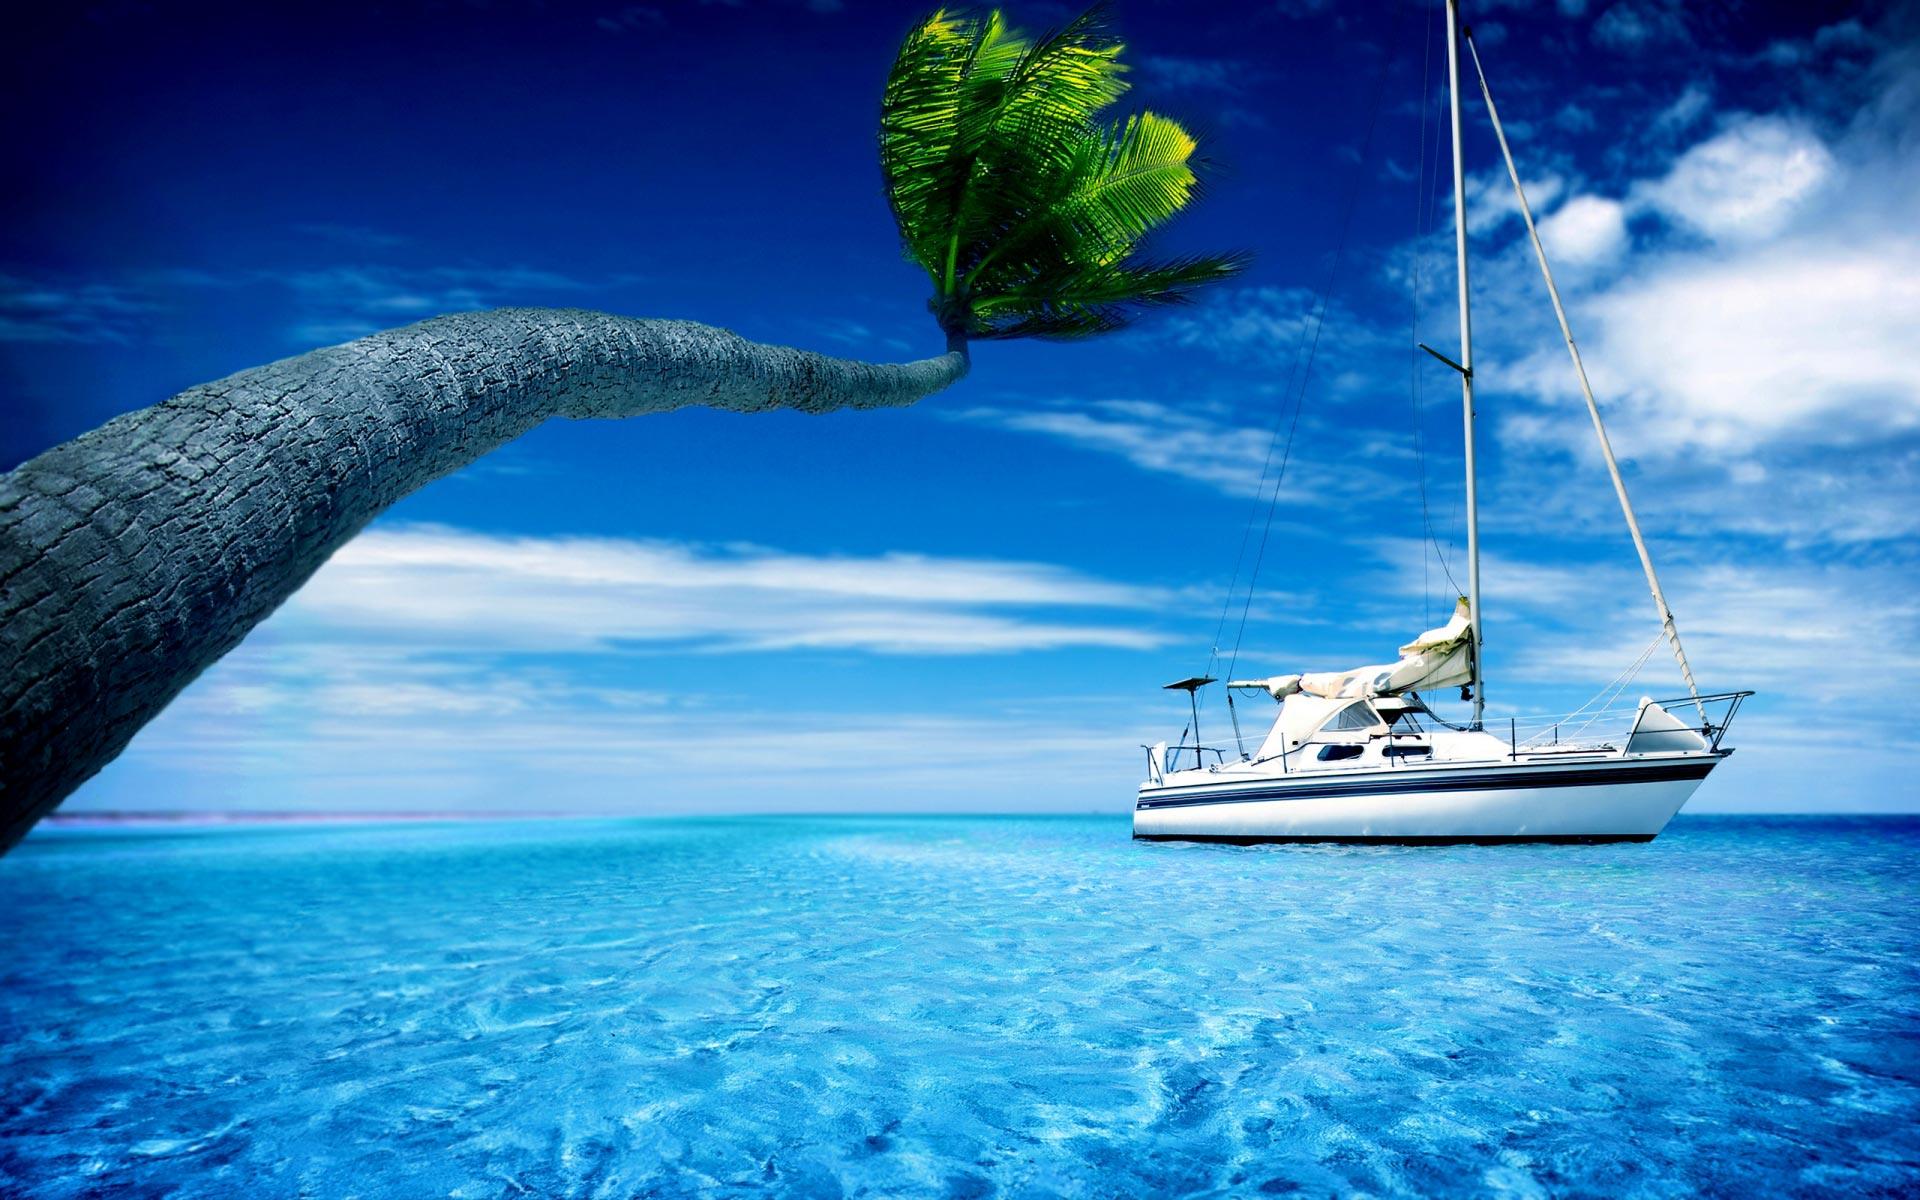 boat-holiday-paradise-sea-sailing-1920x1200 - Magic4Walls.com